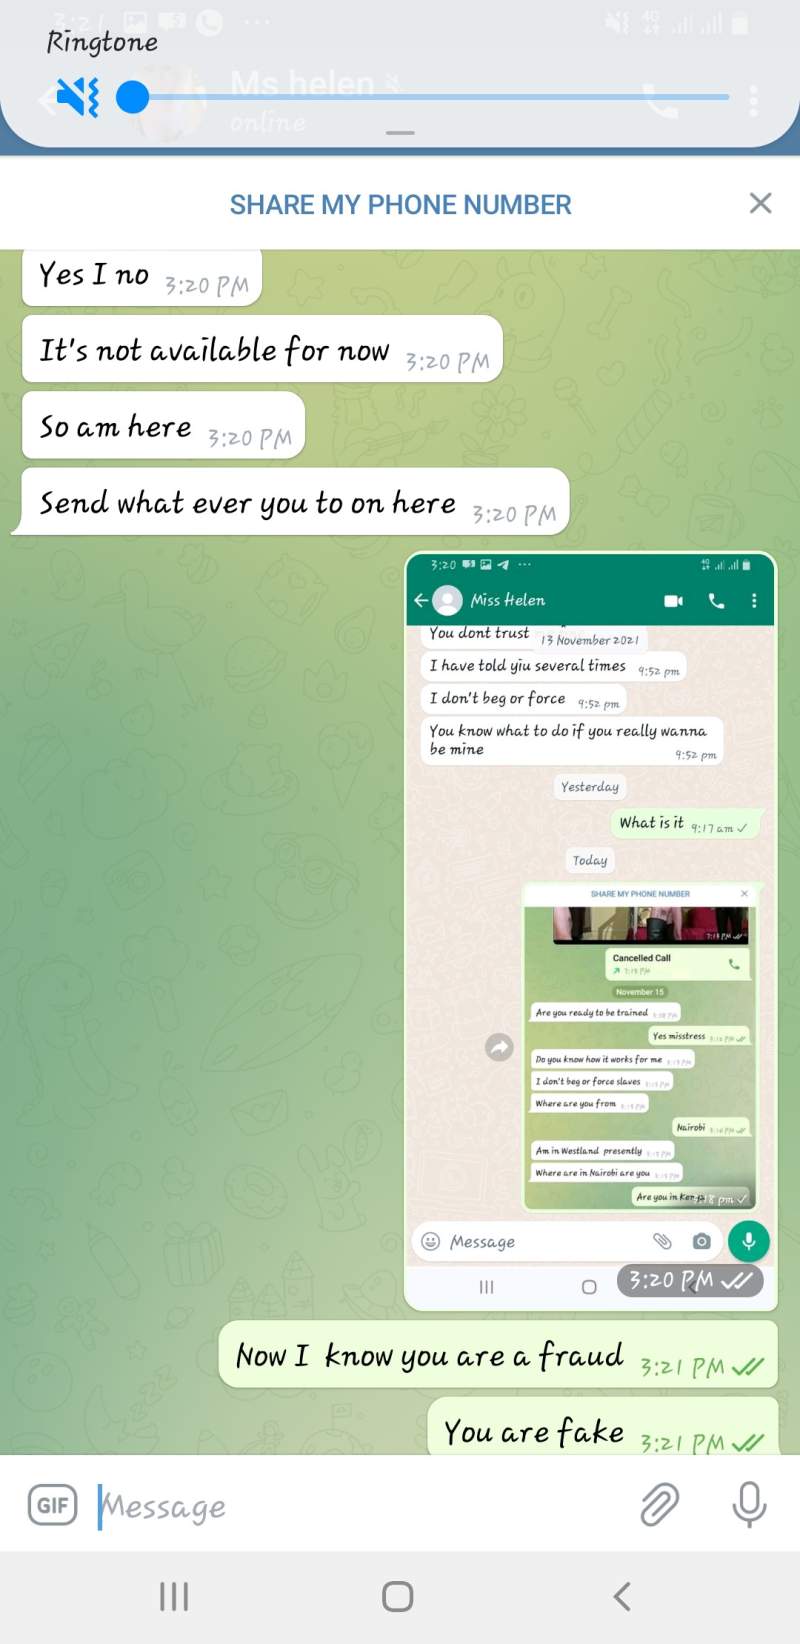 On WhatsApp she was telling me she is in Ethiopia and on telegram she said she is in kenya